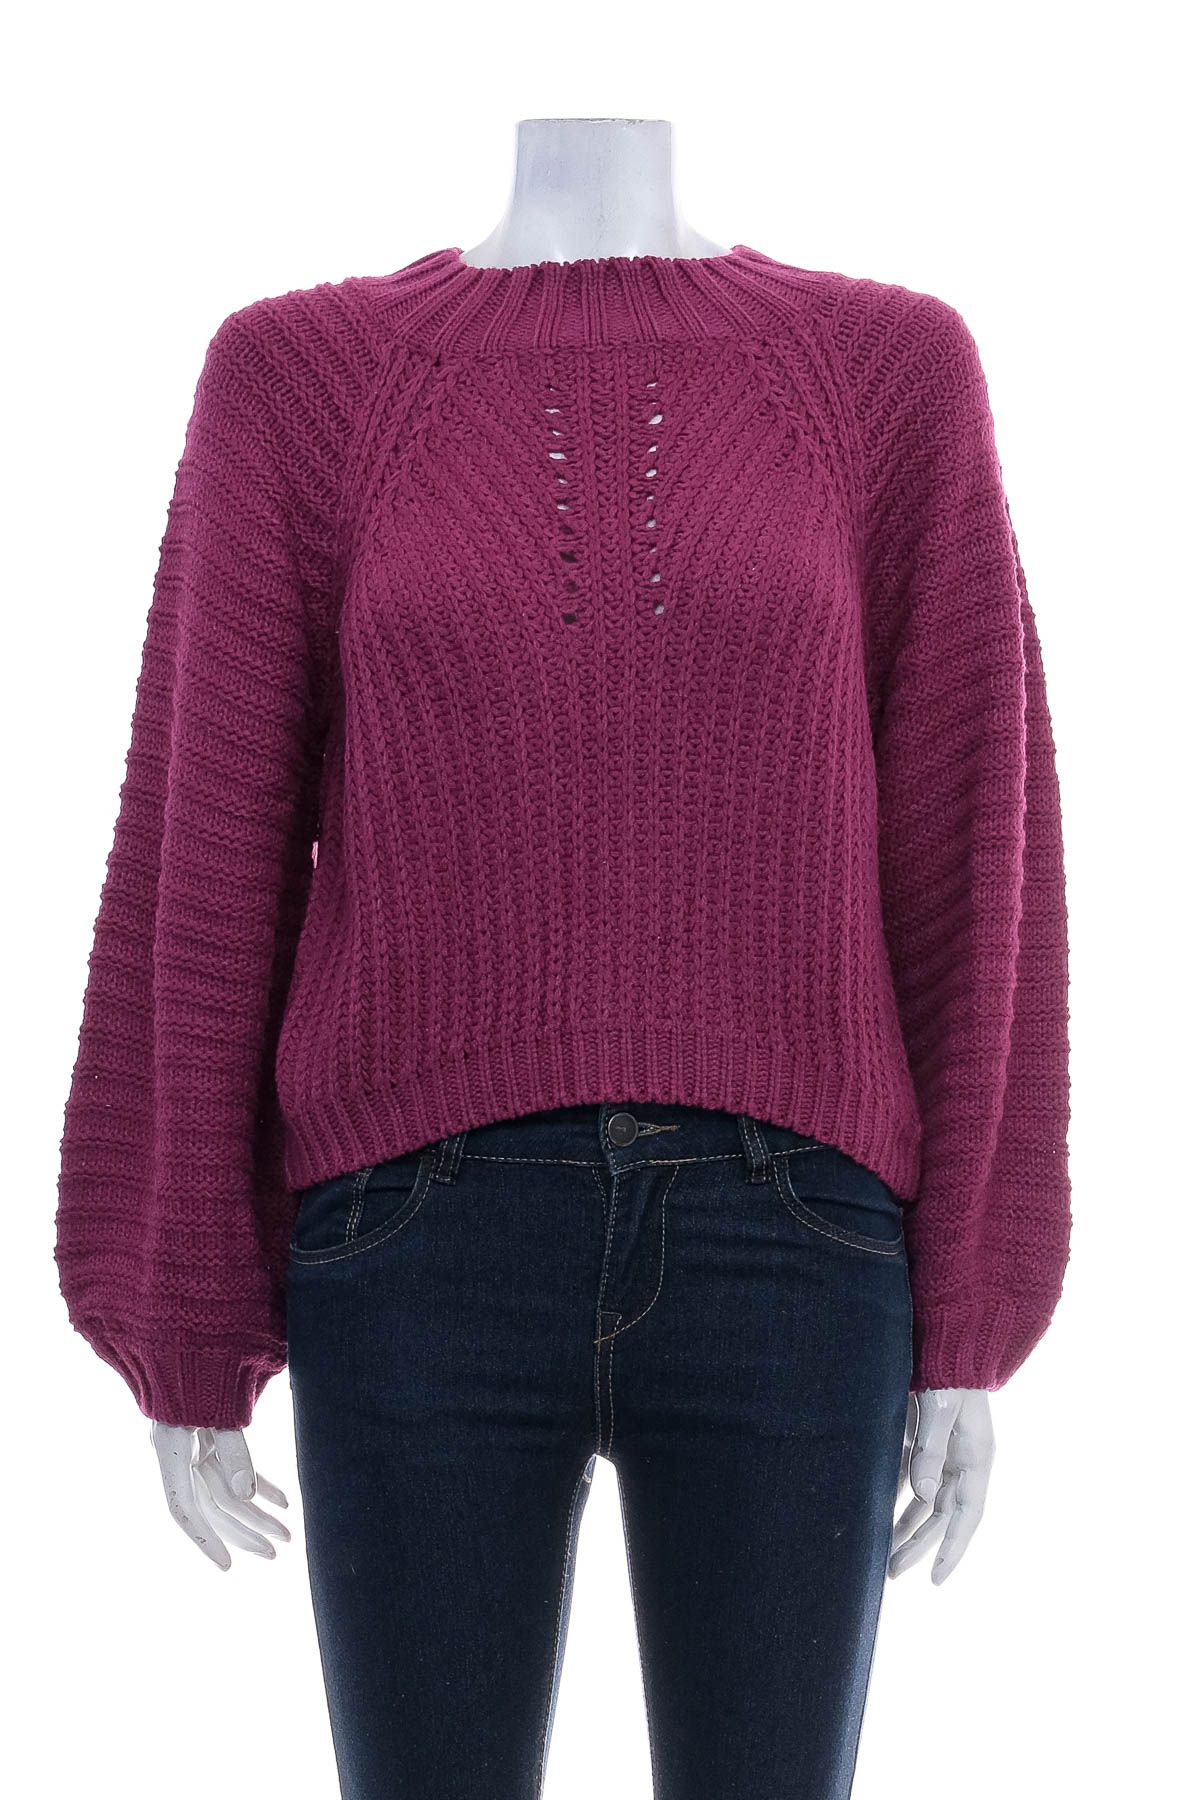 Women's sweater - Valleygirl - 0